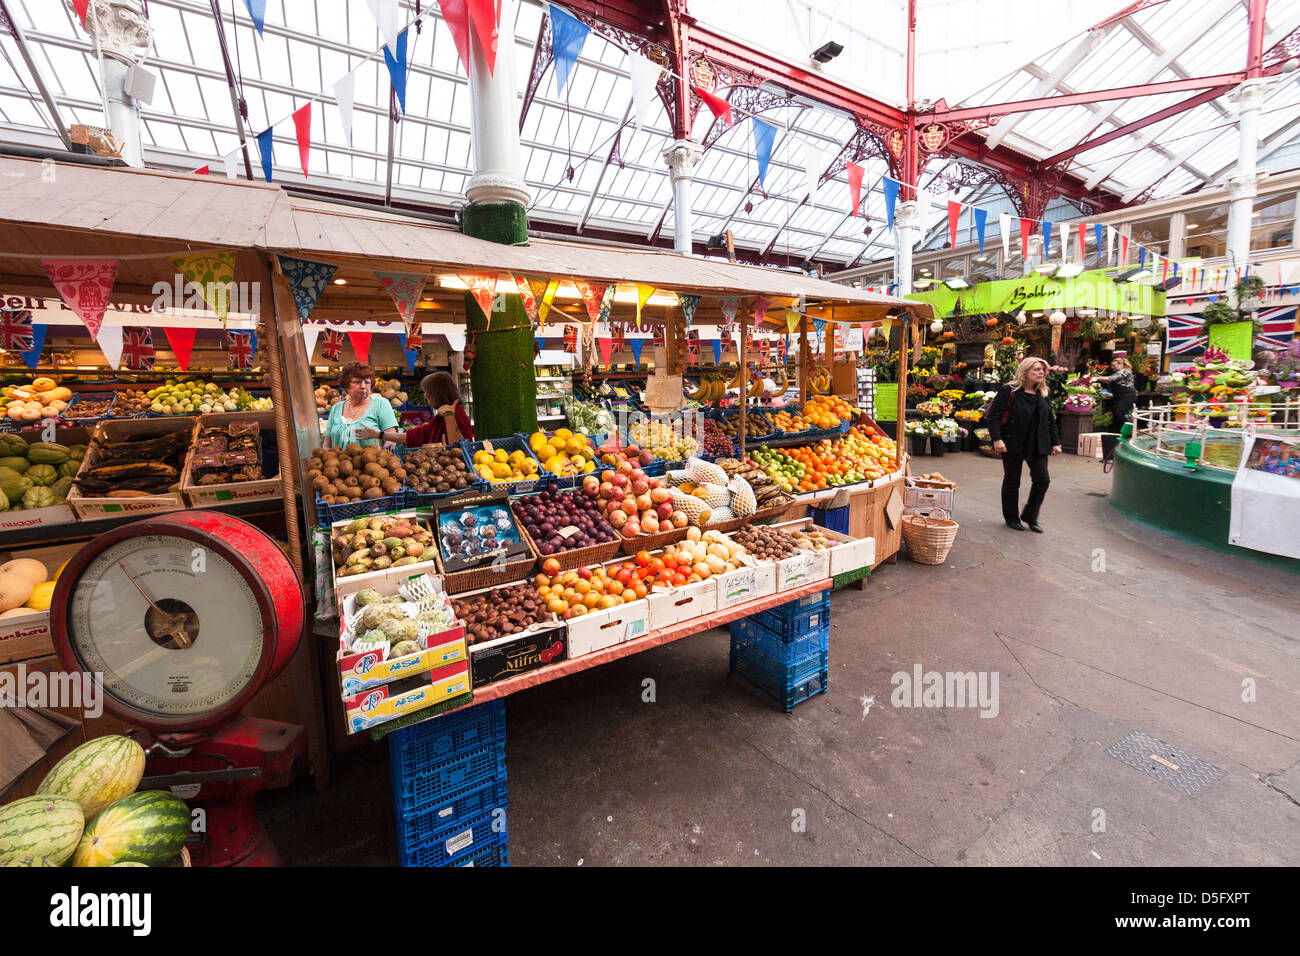 Frutas y verduras a la venta en el mercado interior, St Helier, Jersey, Islas del Canal, REINO UNIDO Foto de stock